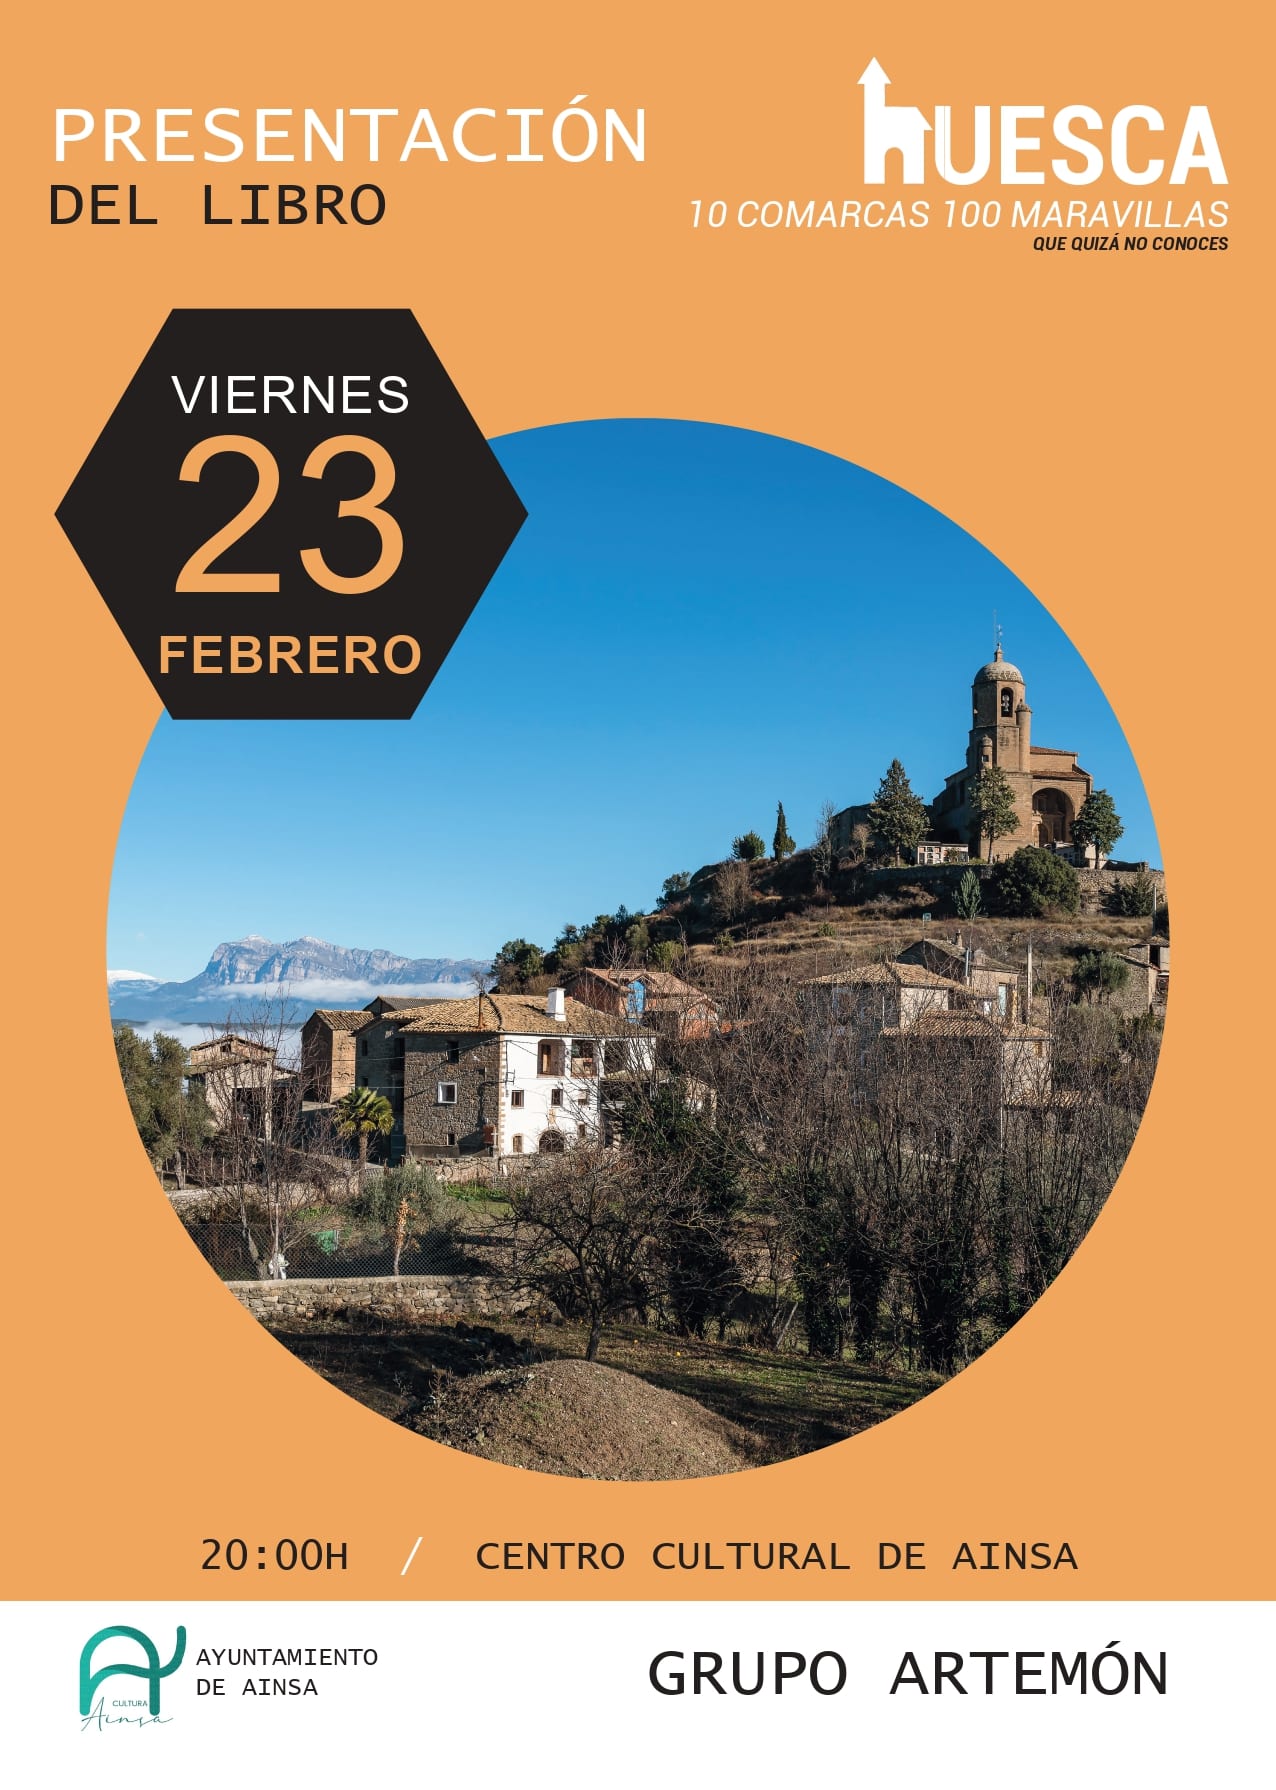 Villa de Ainsa - Sobrarbe Pirineo 5. CARTELES 10 comarcas 100 maravillas 1 page 0001